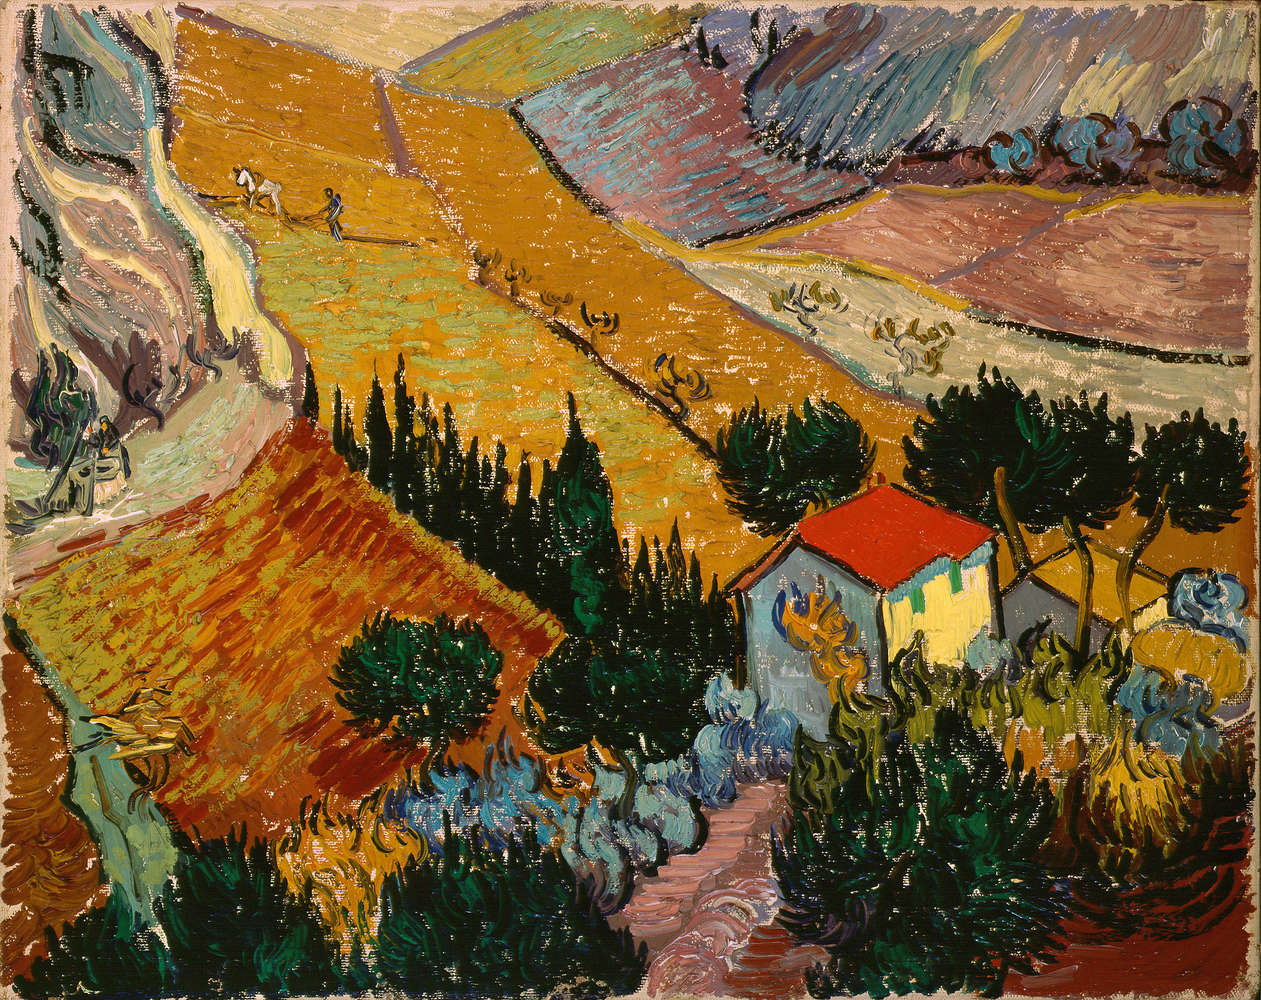             Paesaggio con casa e aratore" murale di Vincent van Gogh
        